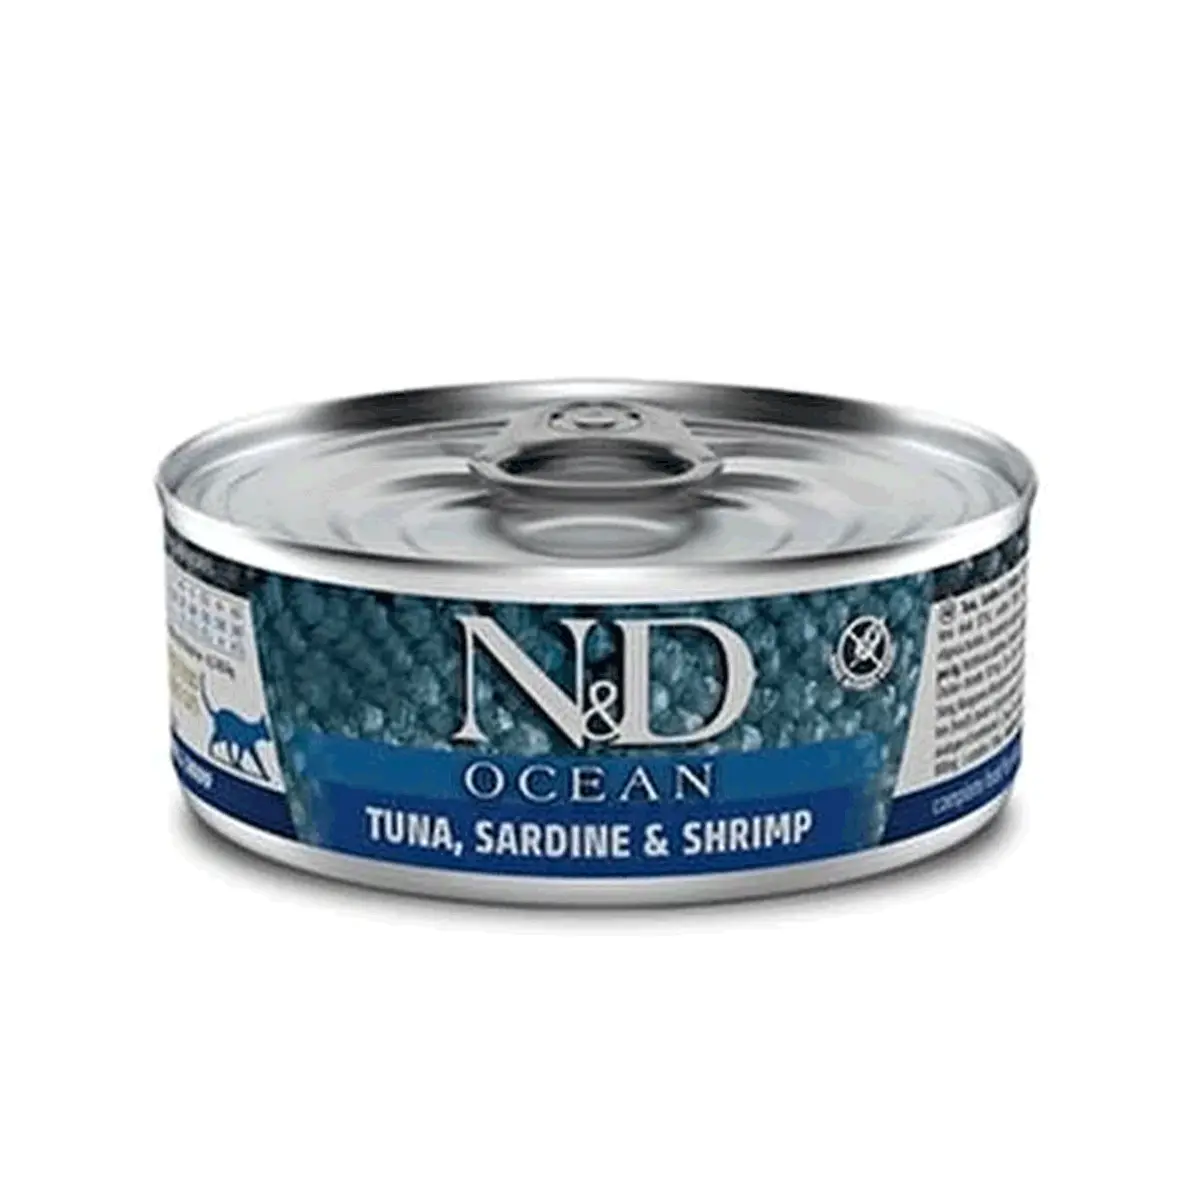 N&D Ocean Ton Balığı, Sardalya ve Karides Kedi Konservesi 24*70 Gr - Thumbnail